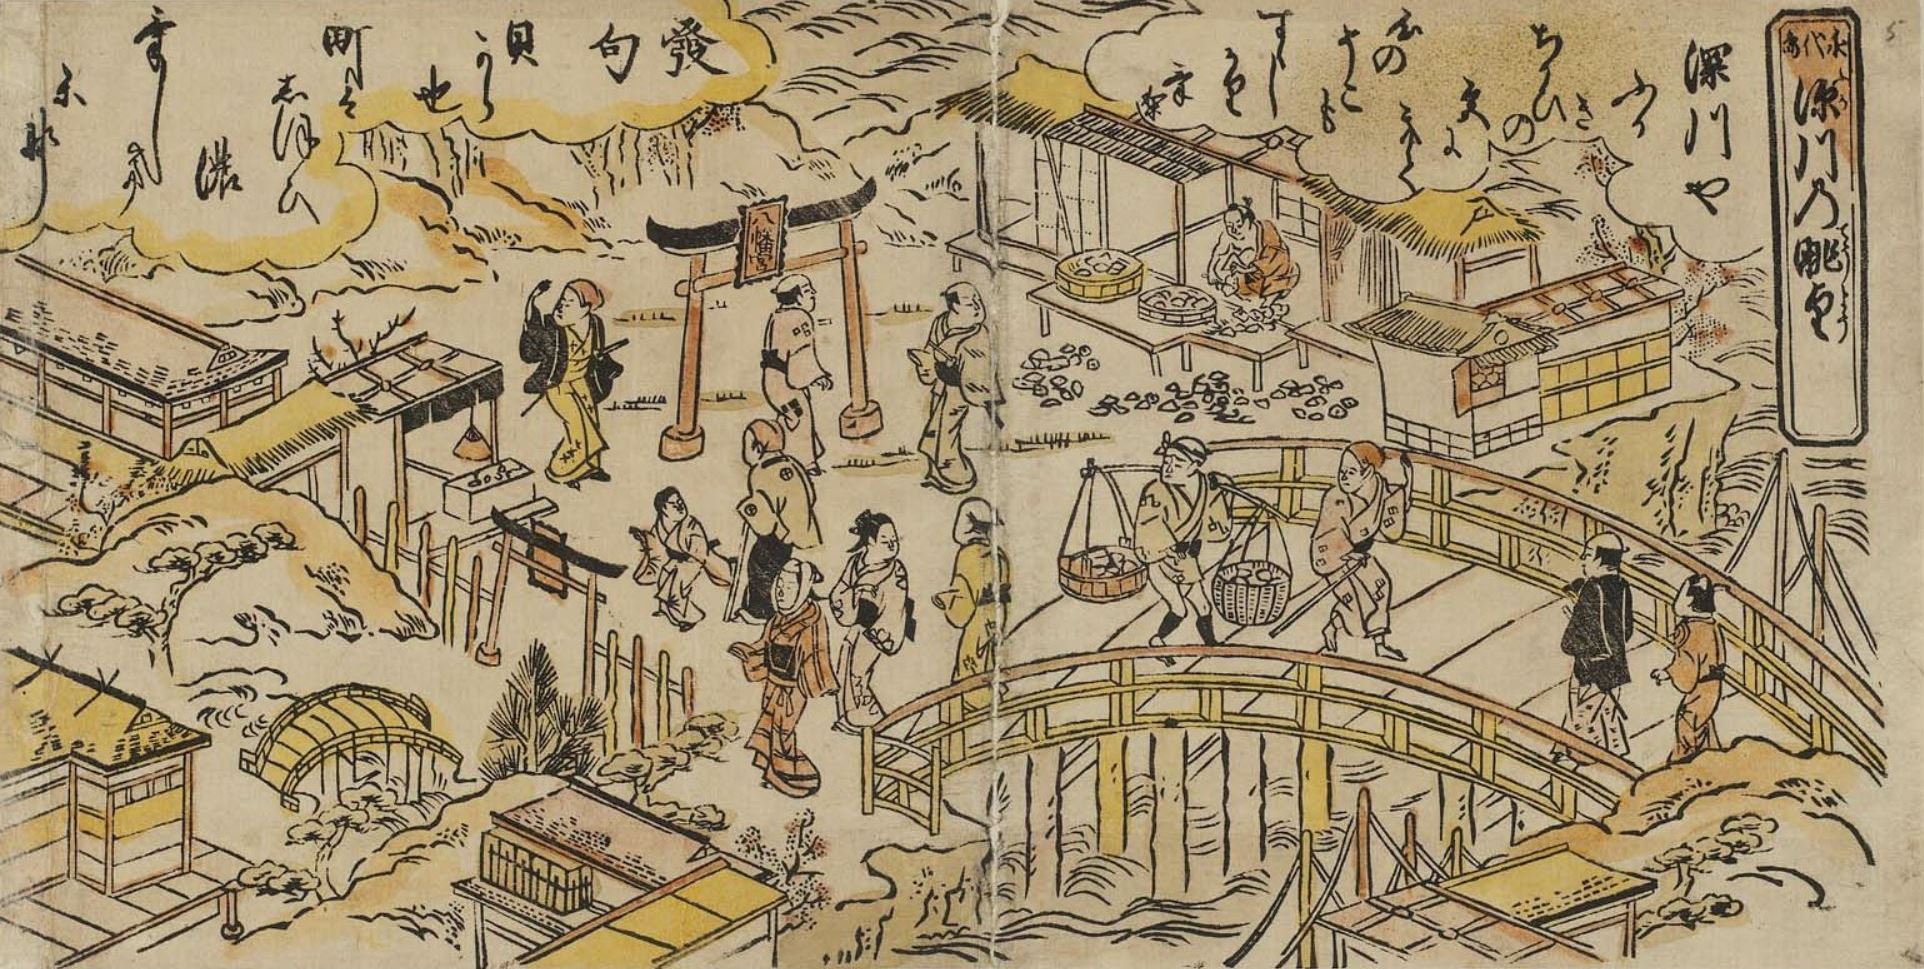 Нисимура Сигэнага. "Панорамный вид Фукагавы от моста Эйтай".